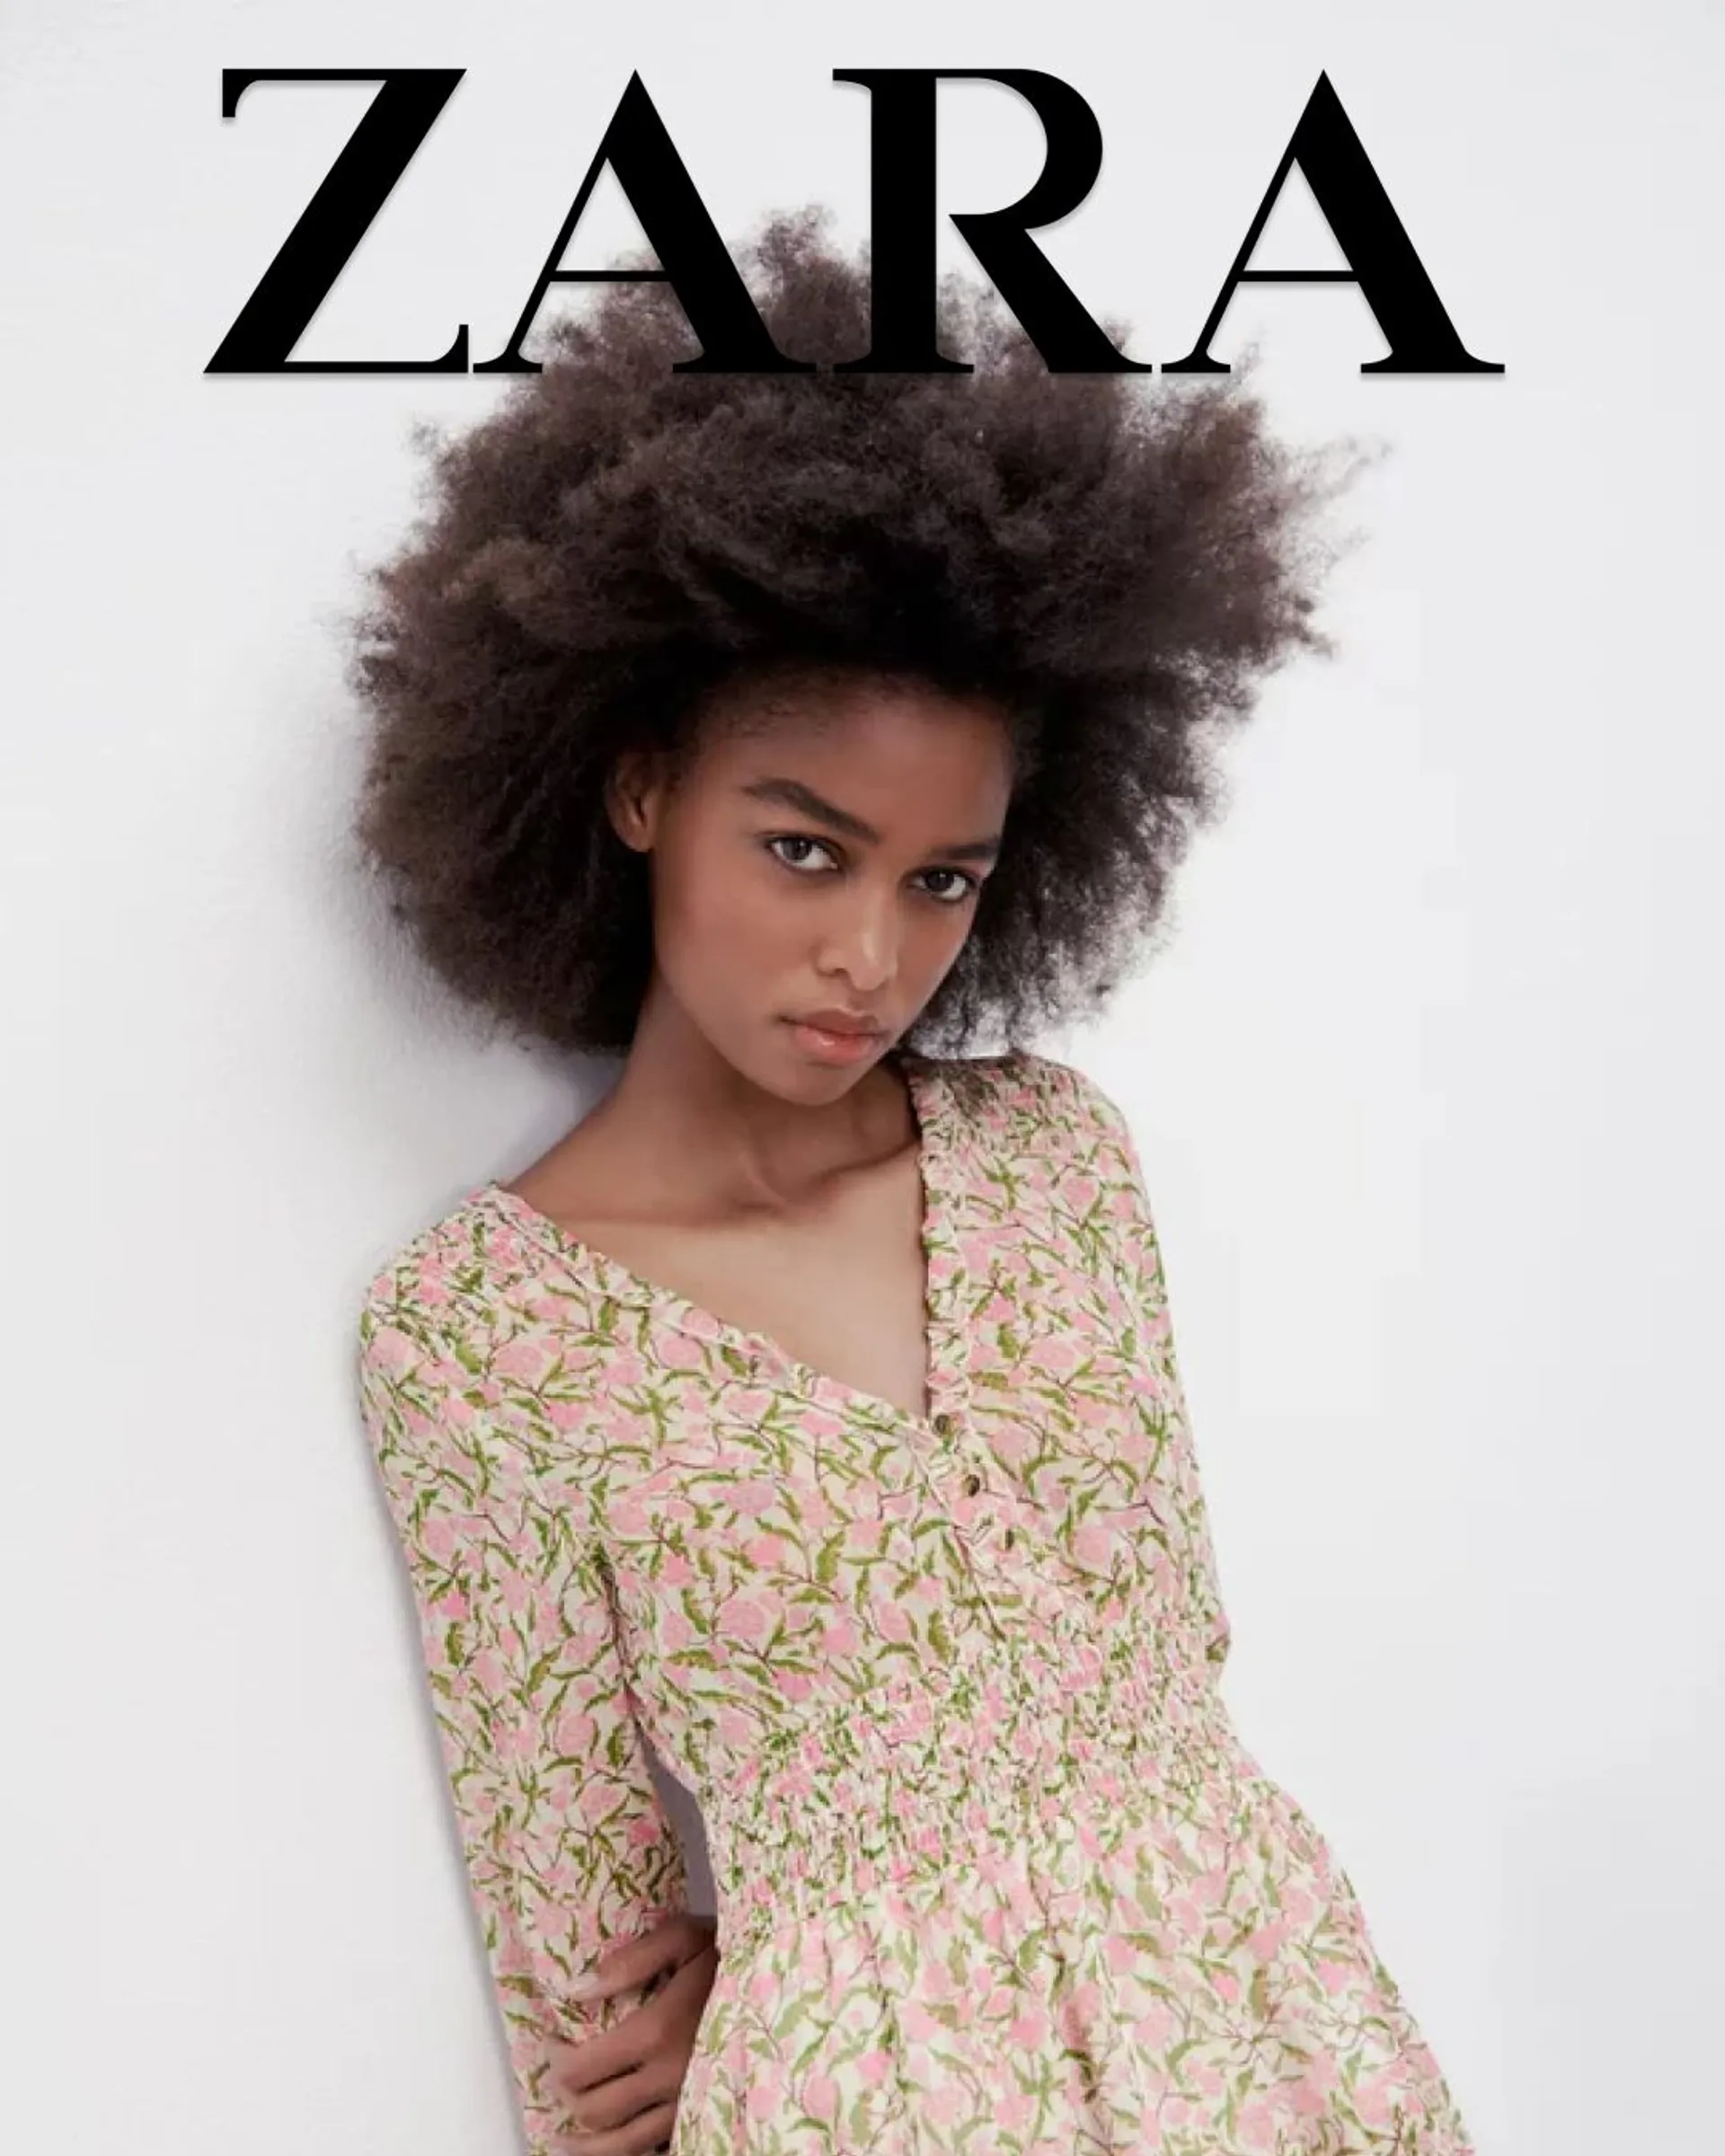 Zara - Moda